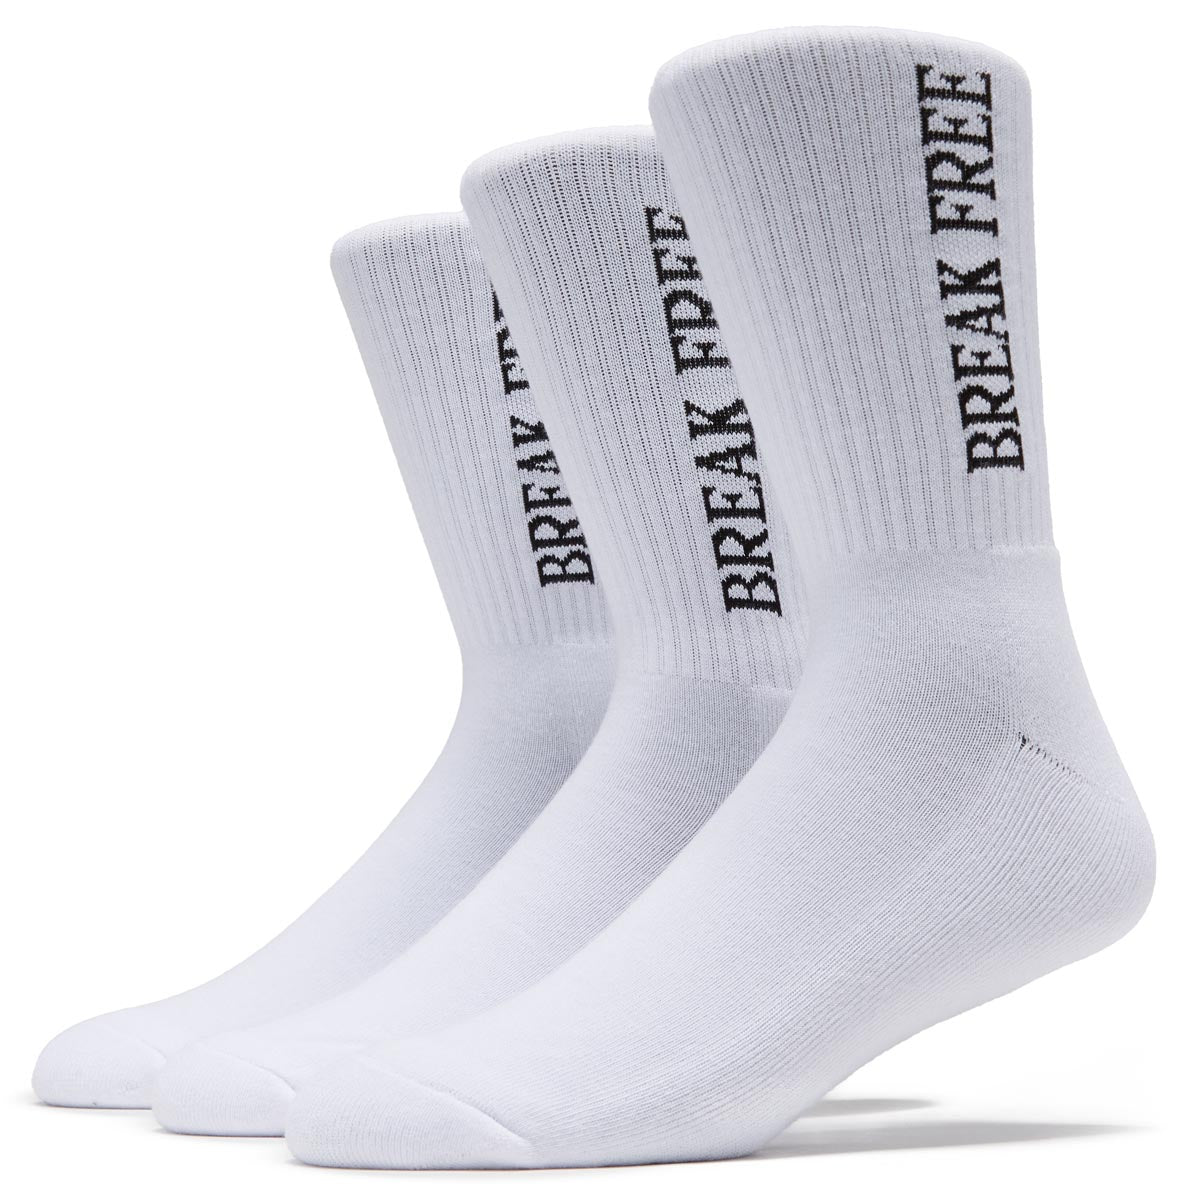 Last Resort AB Break Free 3 Pack of Socks - White/Black image 1